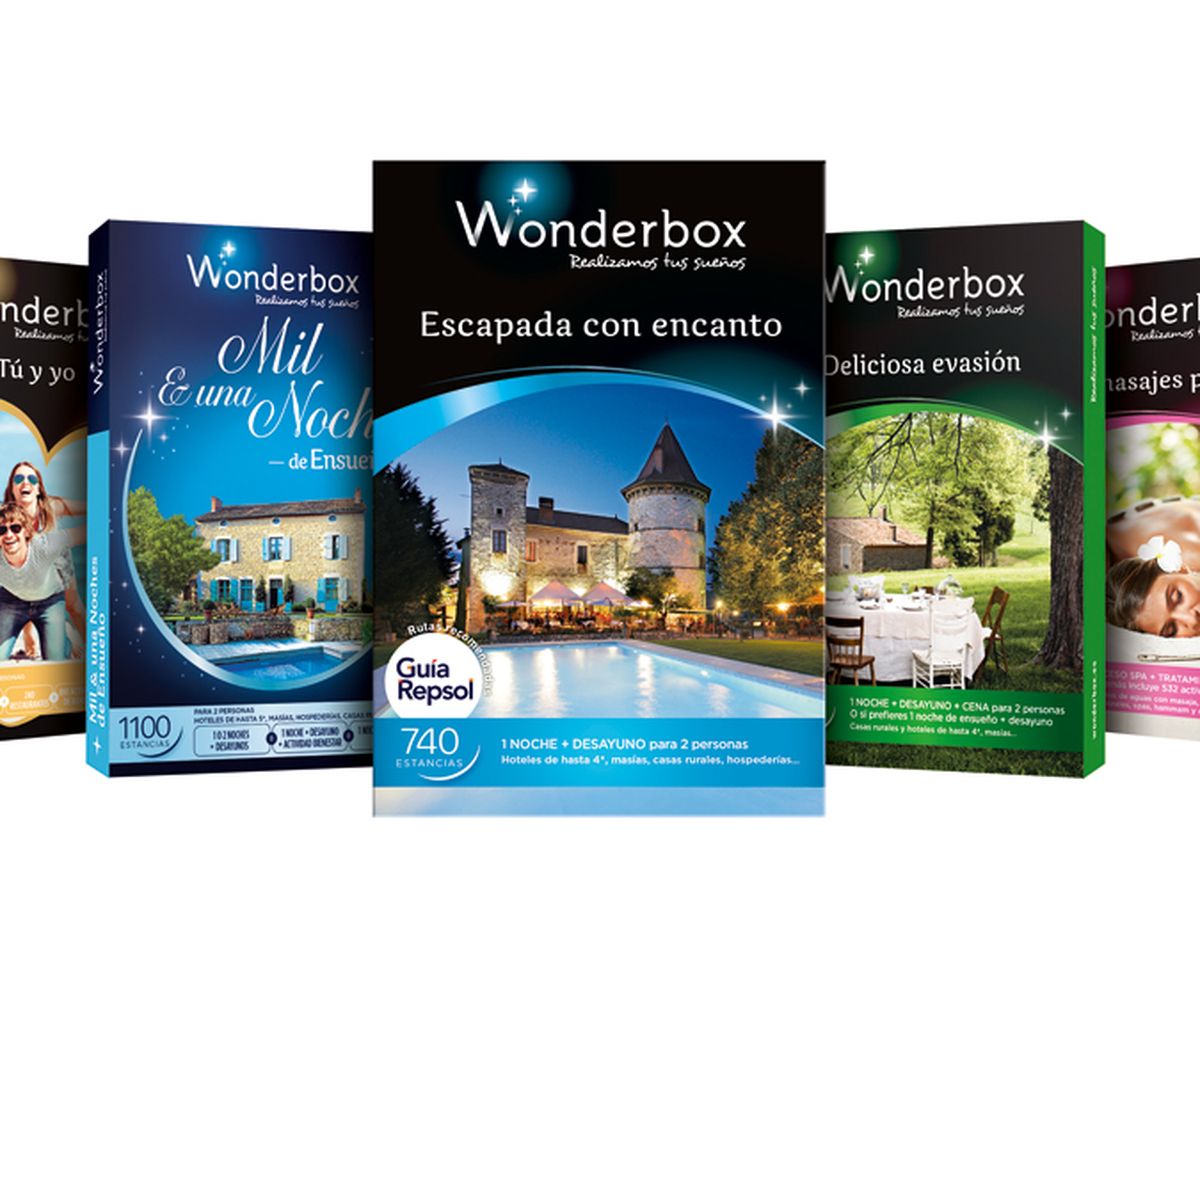 Nuevos cofres Wonderbox 2015: aventura, relax y coches